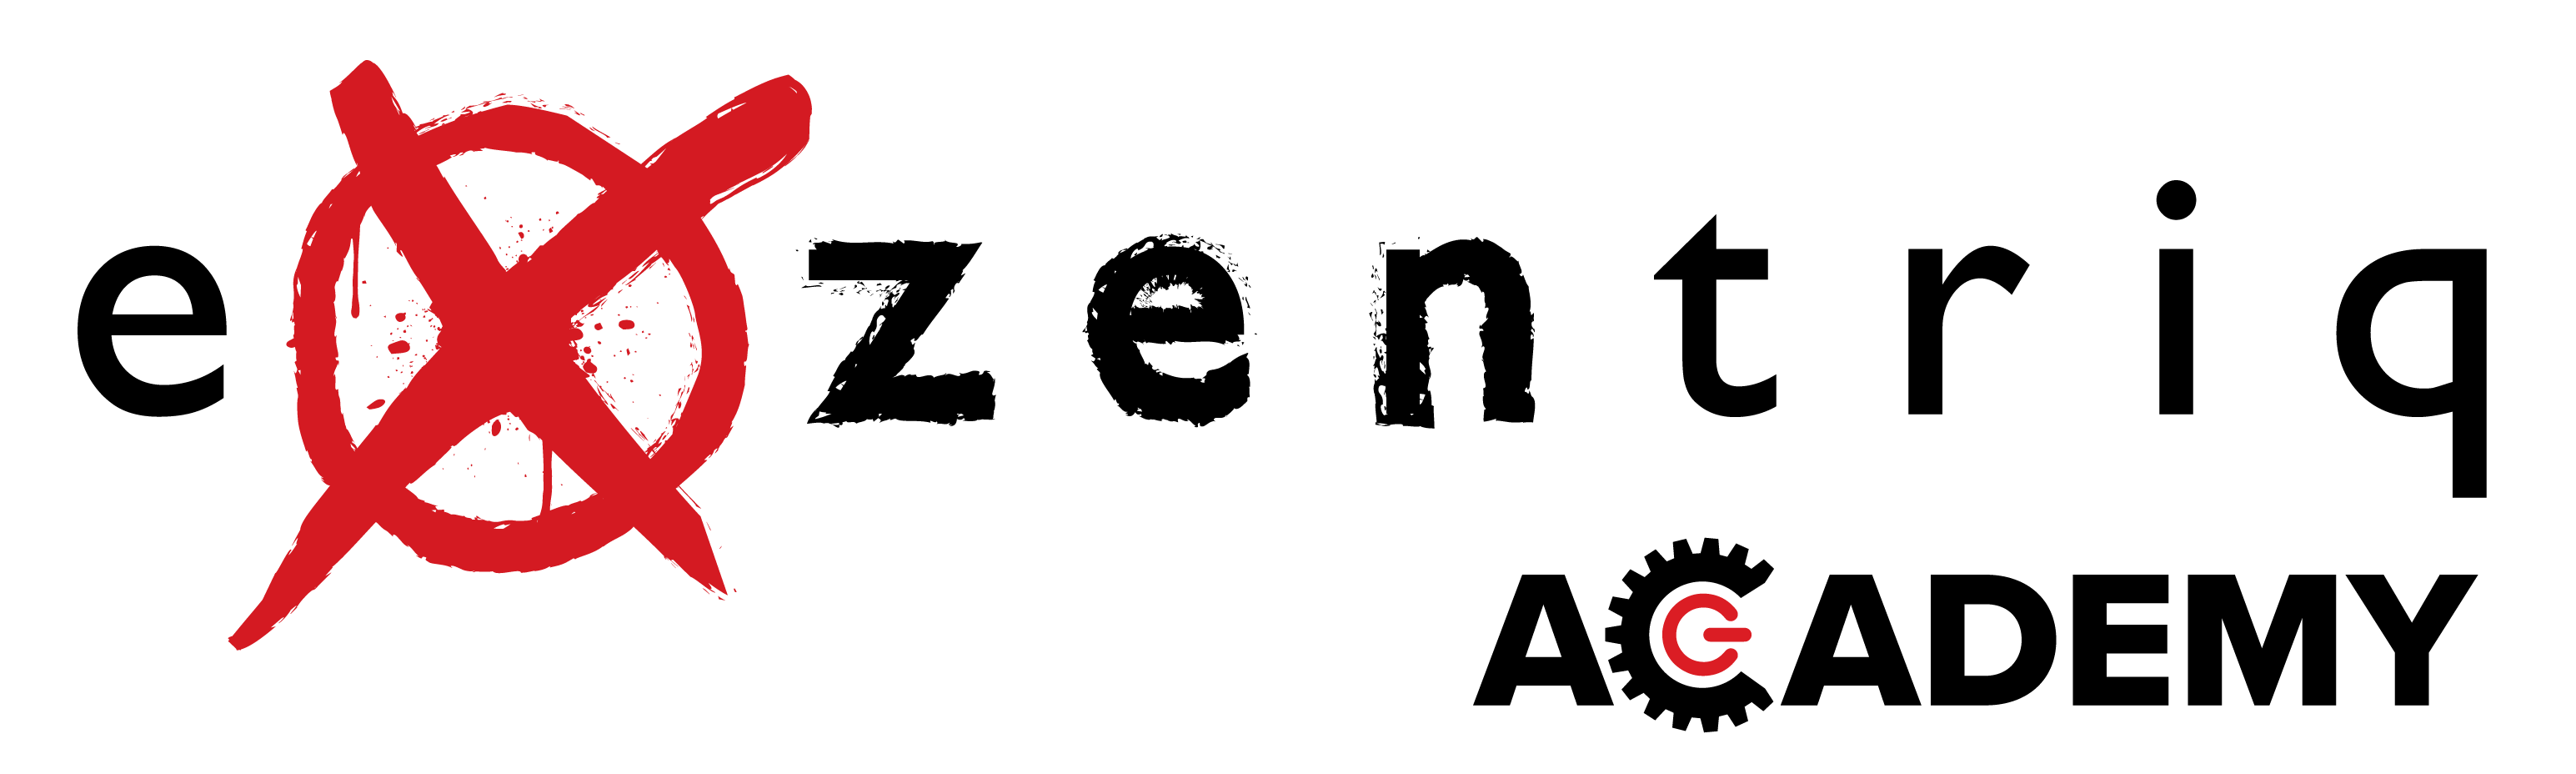 exzentriq academy logo mørk